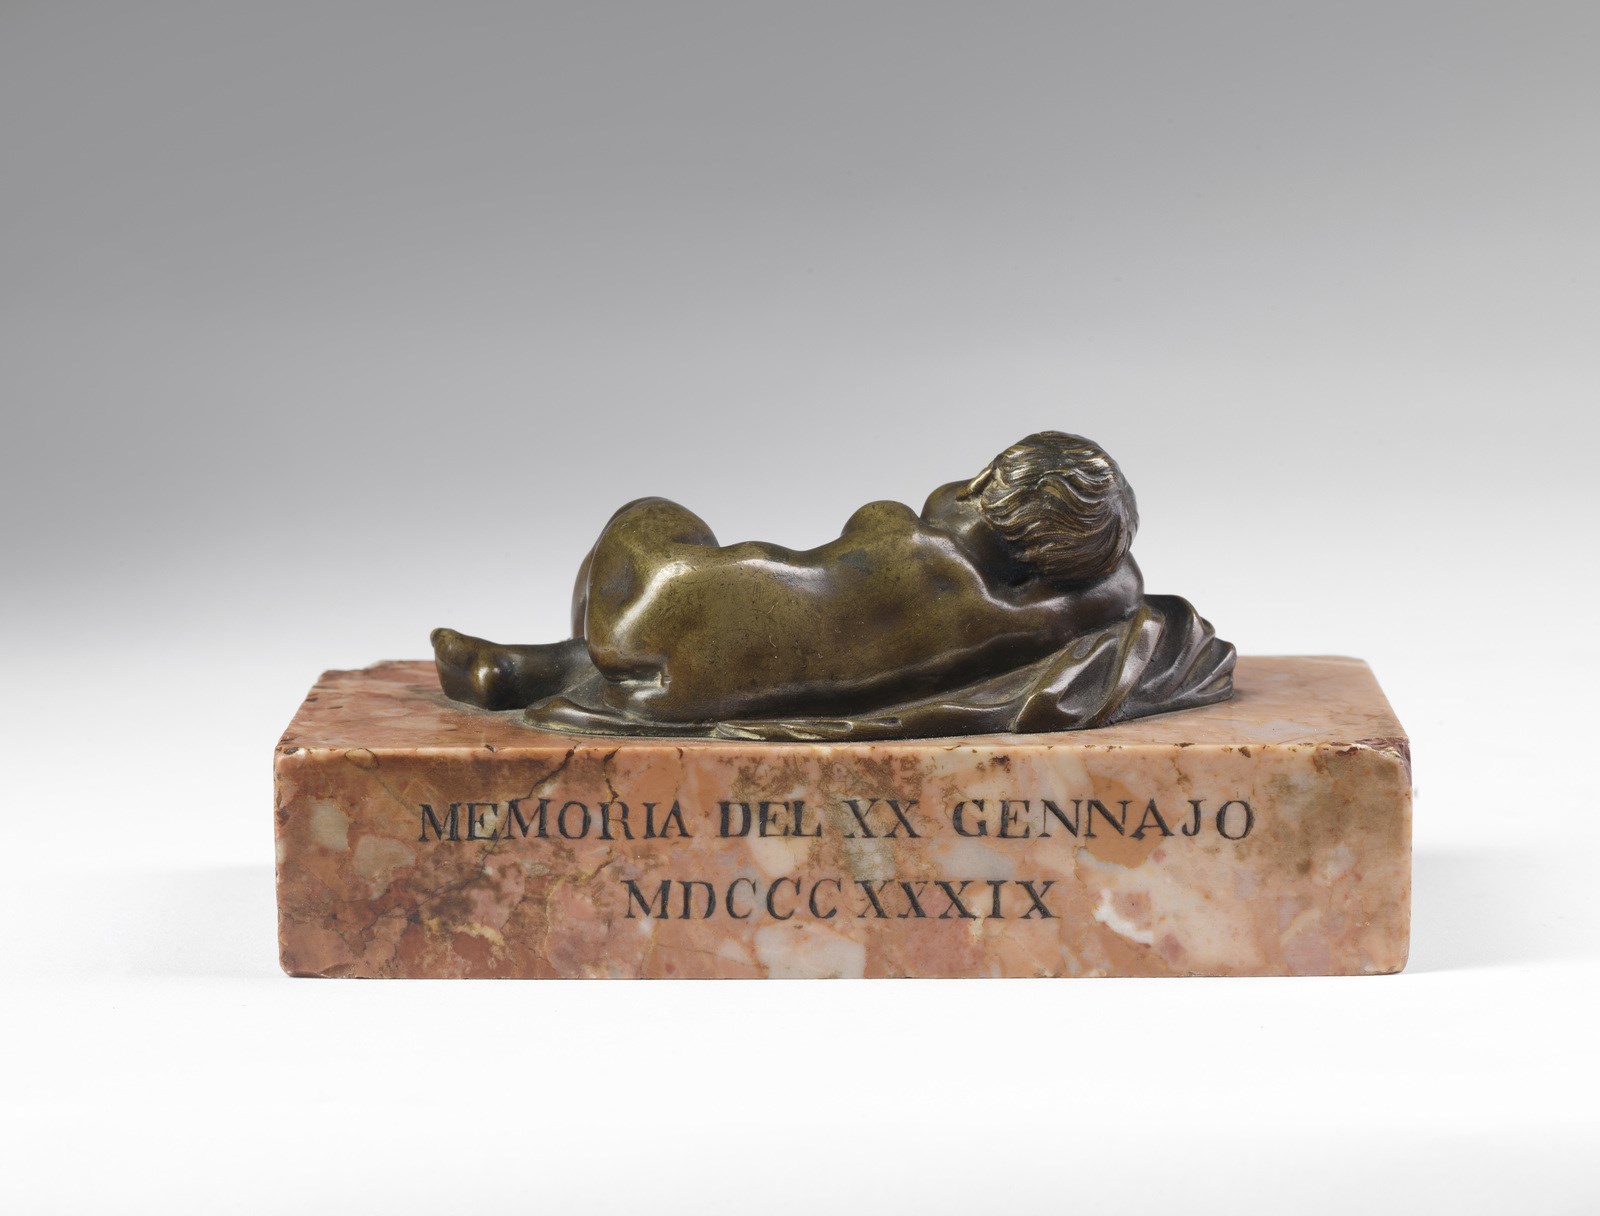 MANIFATTURA ITALIANA DEL XIX SECOLO Sleeping putto in bronze. - Image 2 of 3